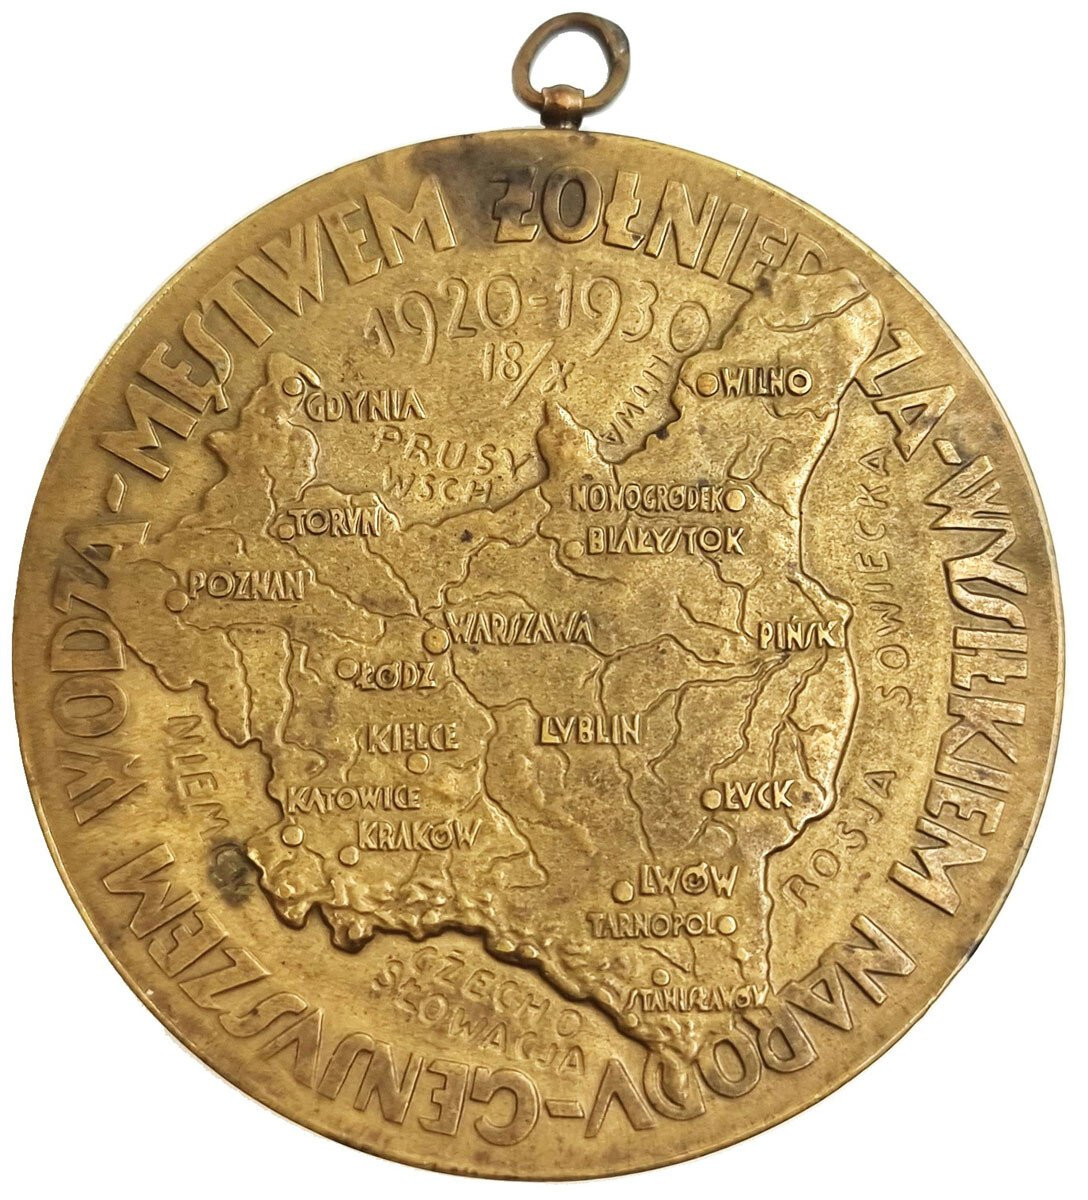 Polska medal 1930 Józef Piłsudski